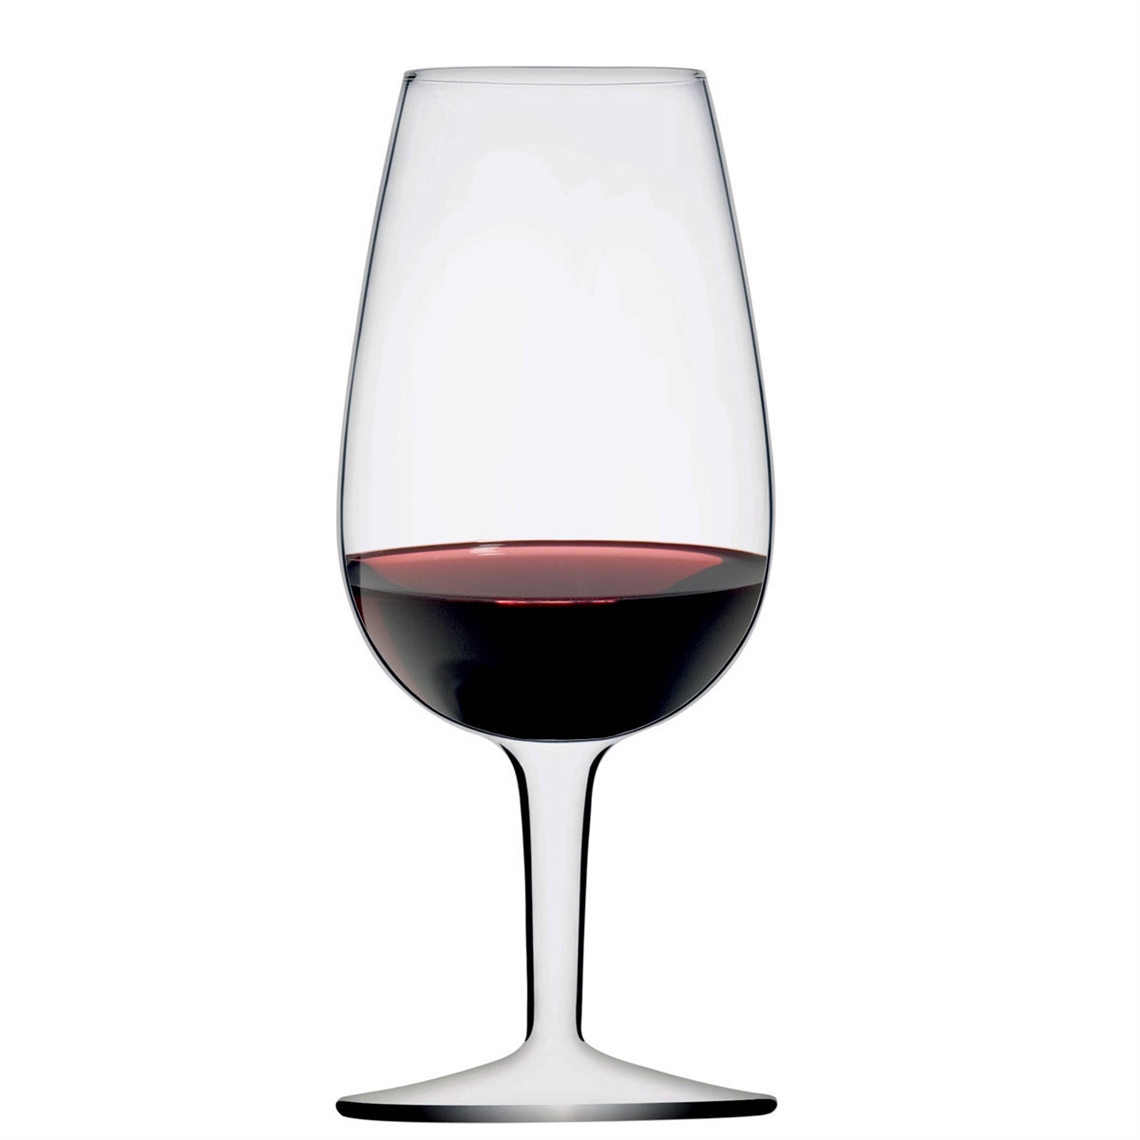 View more spirit glasses from our Wine Tasting Glasses range